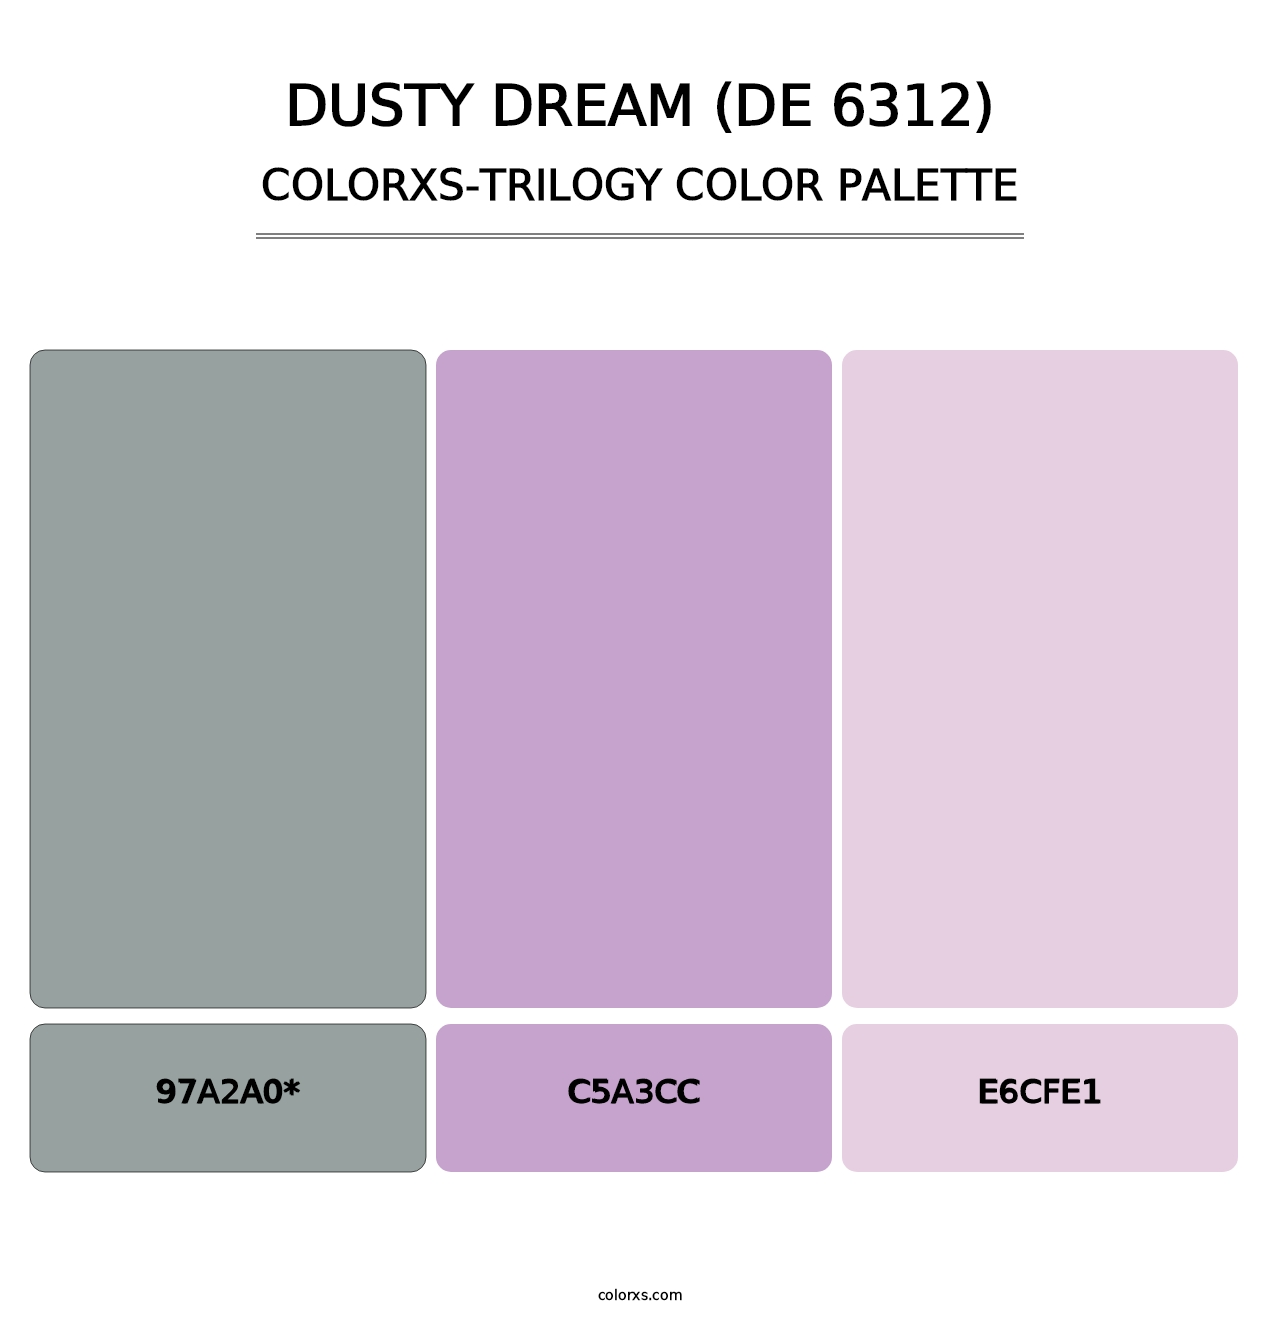 Dusty Dream (DE 6312) - Colorxs Trilogy Palette